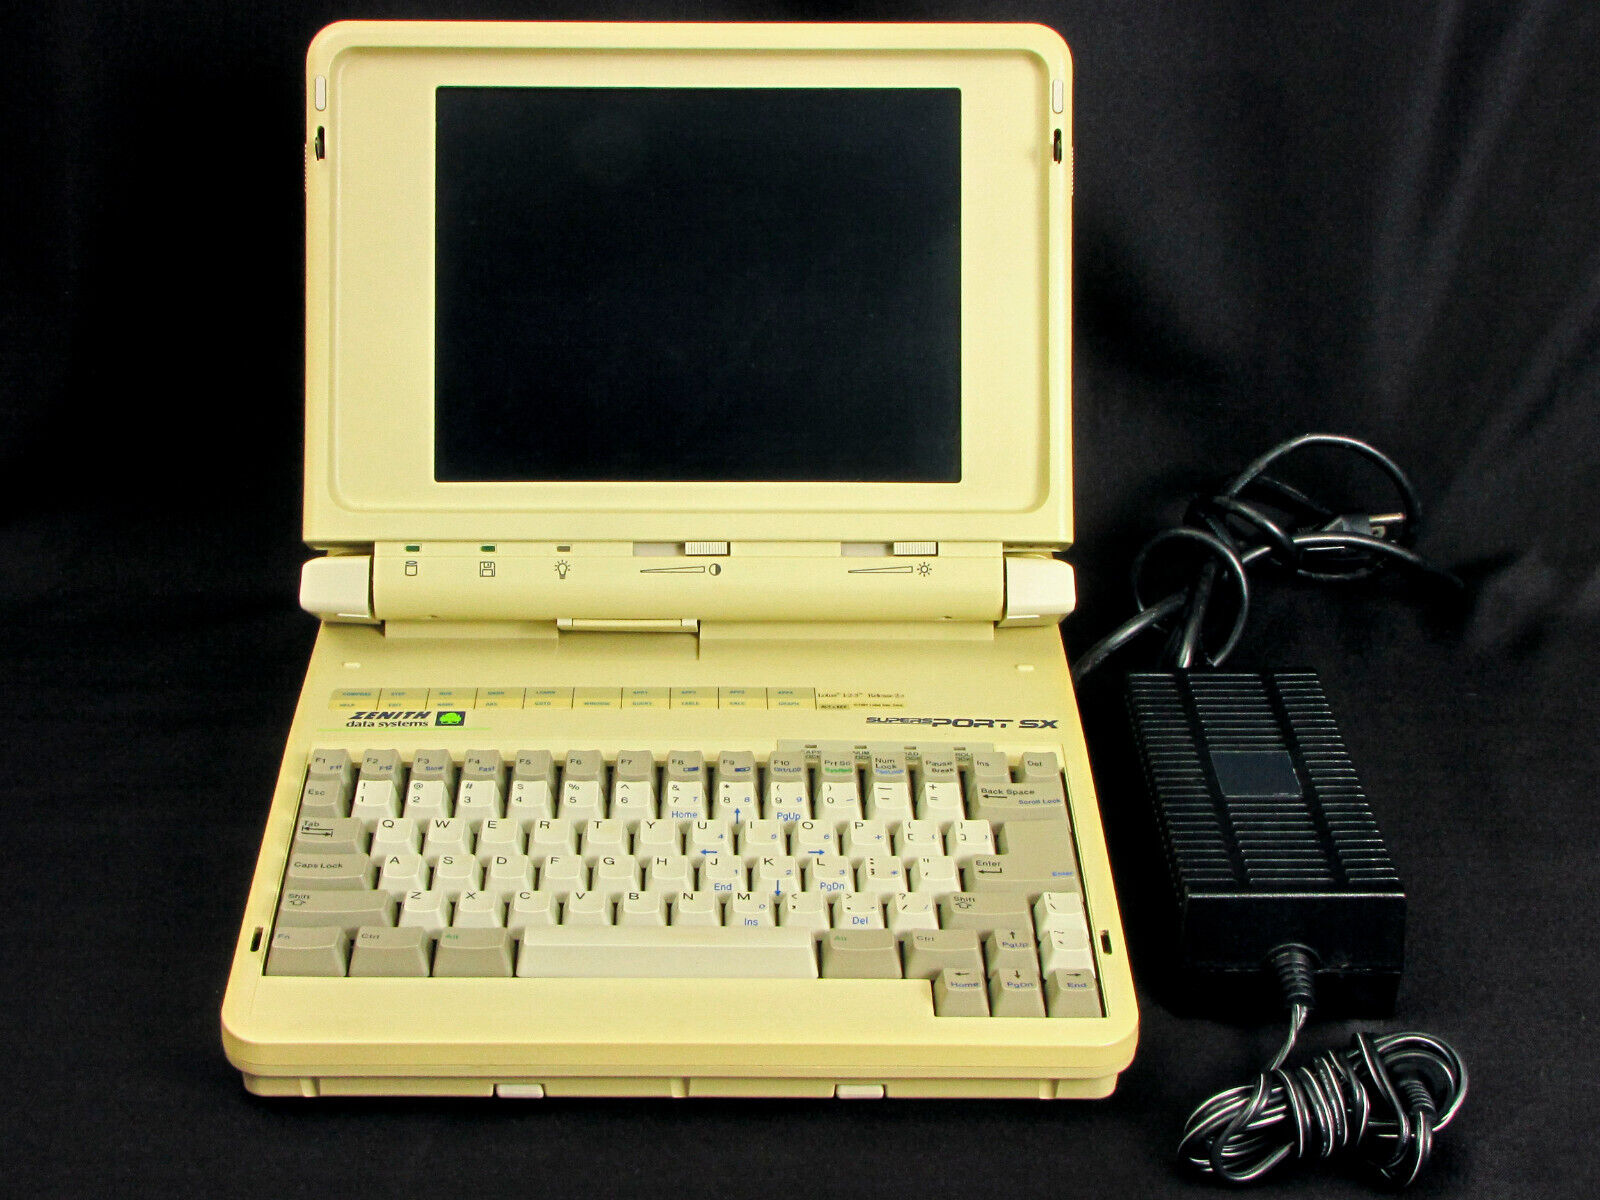 Zenith ZWLl-0300-04 Supersport SX vintage 386 laptop, + power supply + Rhino bag